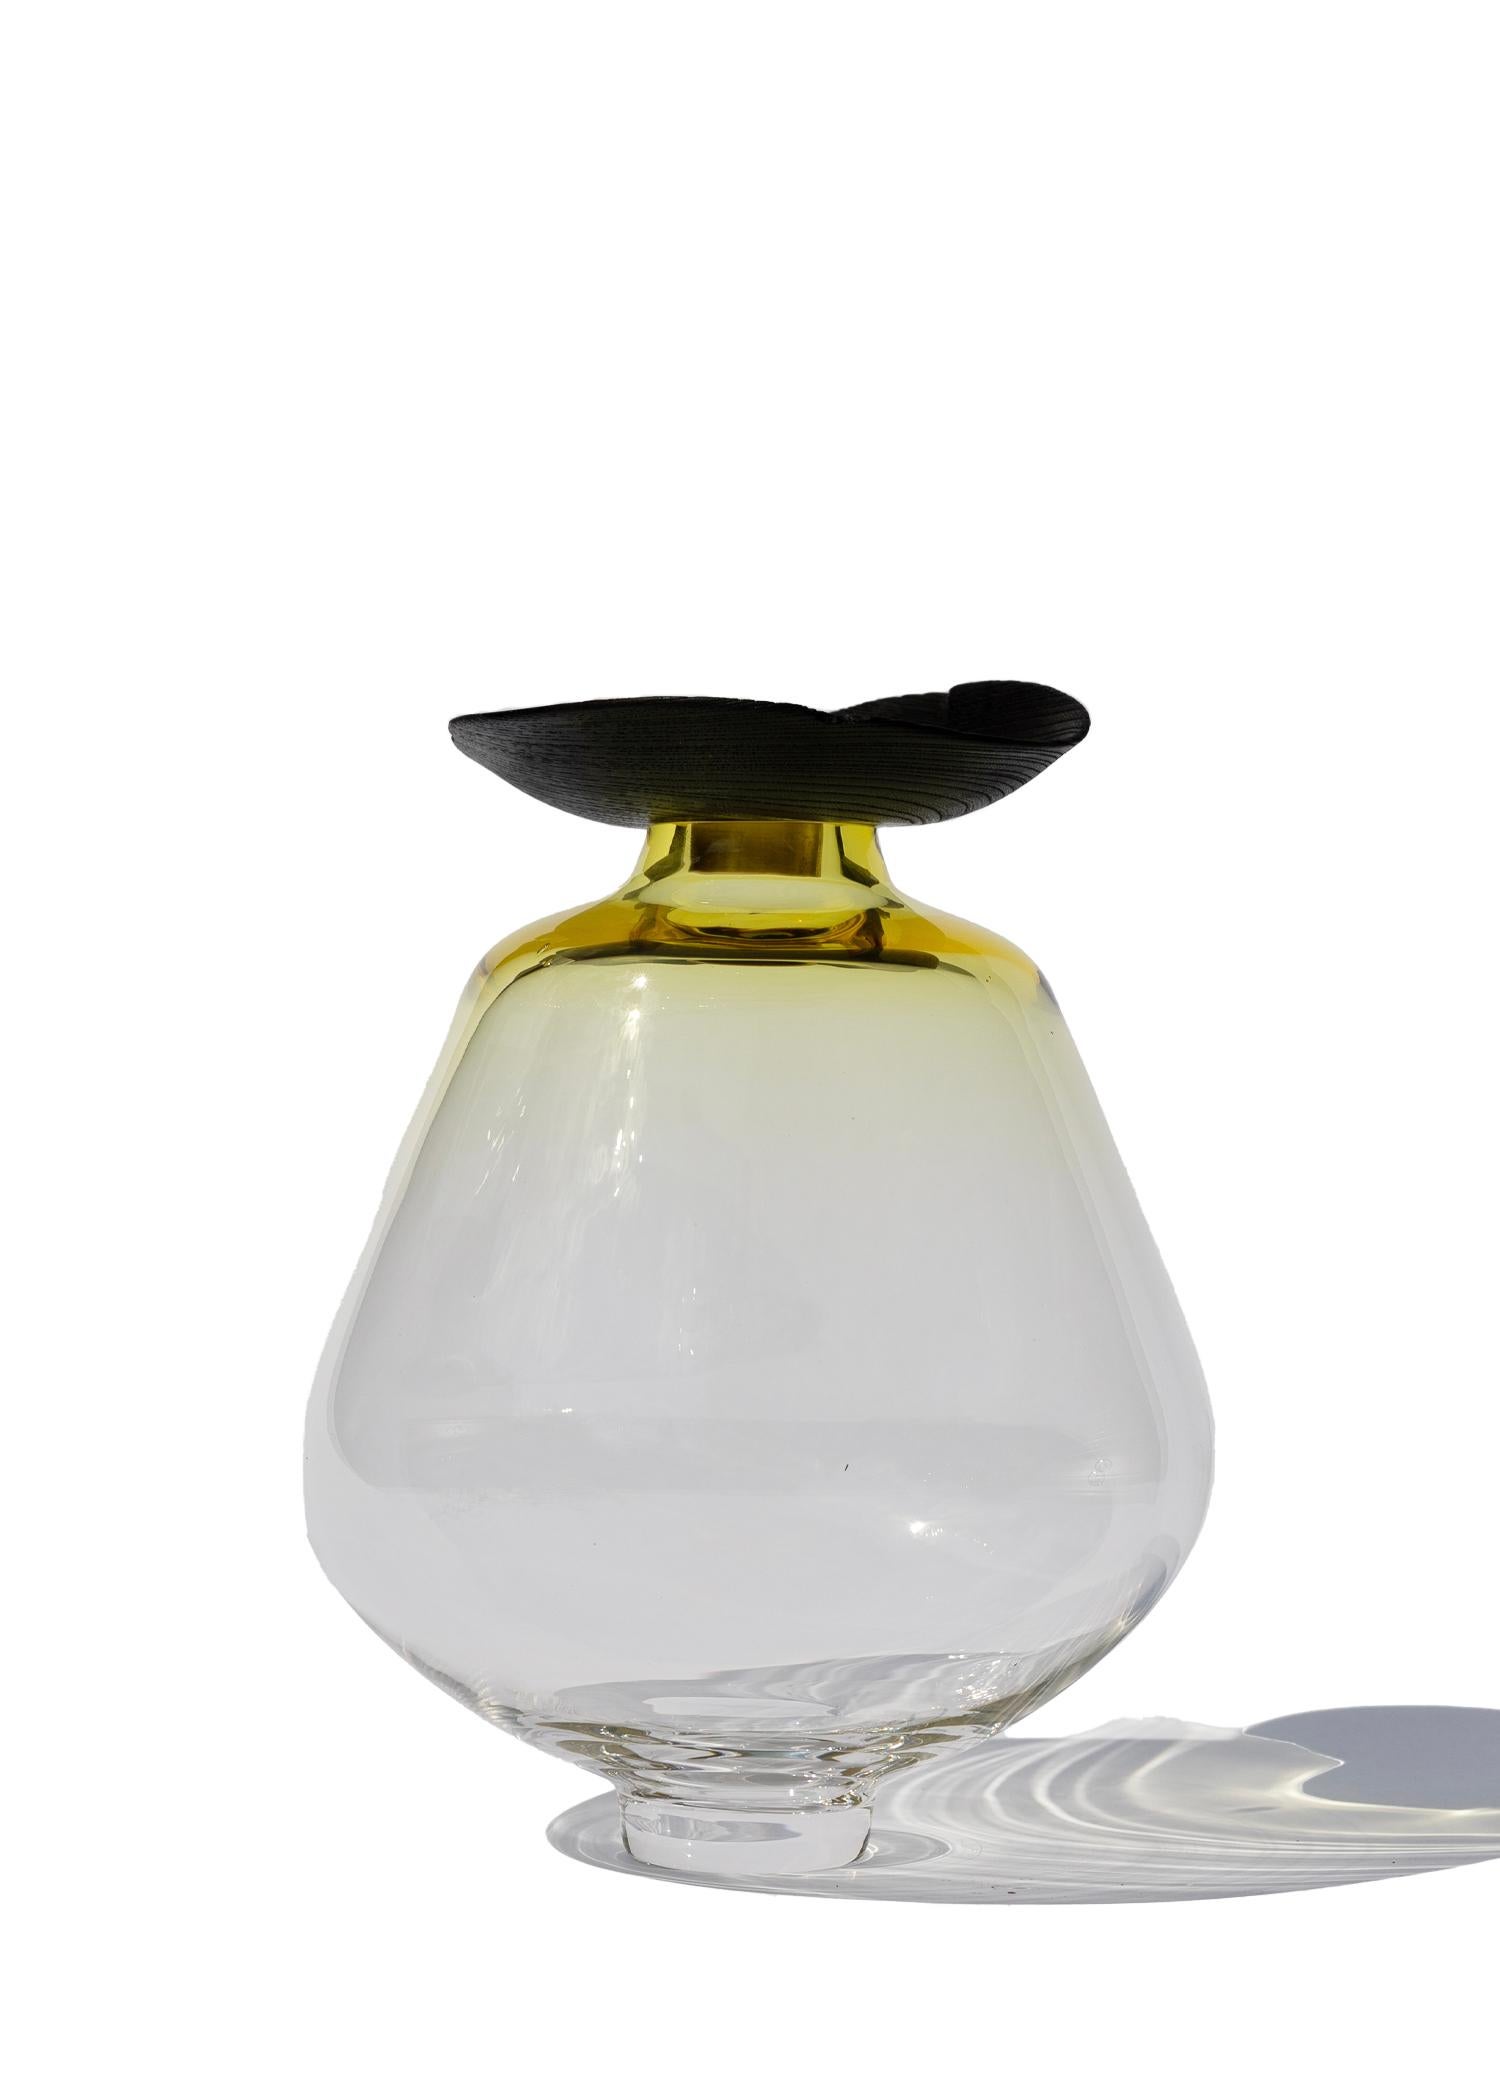 Vase à citron empilable Fukui par Pia Wüstenberg
Pièce unique. Fabriqué à la main en Europe.
Dimensions : Ø 22 x H 26 cm : Ø 22 x H 26 cm.
MATERIAL : Verre soufflé à la bouche  et du bois.

Disponible en différentes couleurs. Les dimensions sont